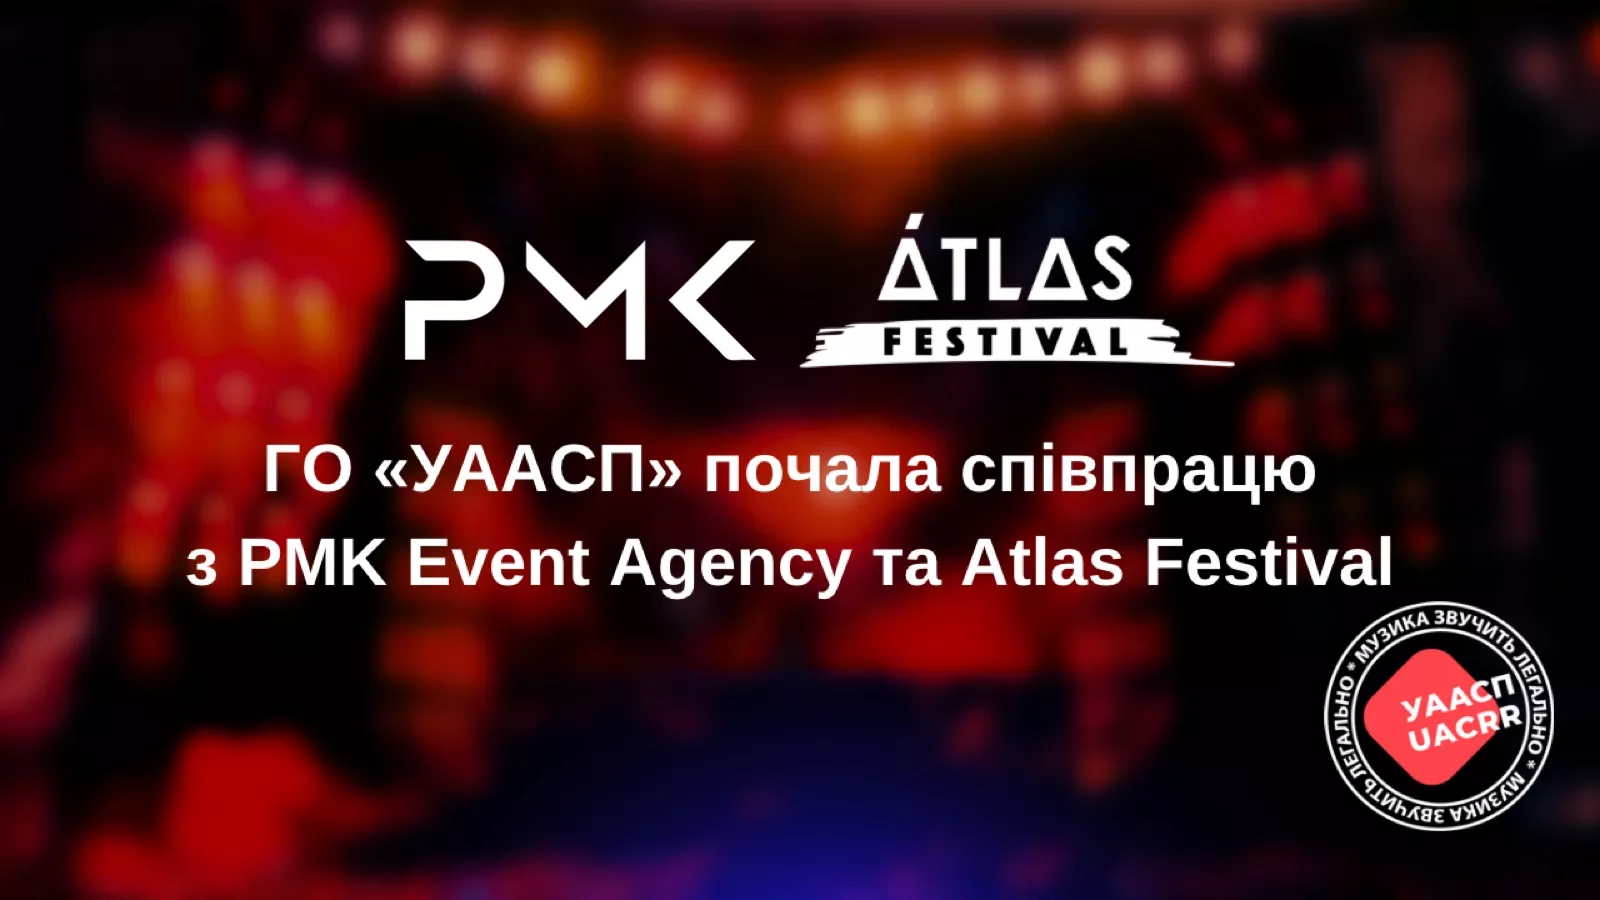 «УААСП» оголосила про співпрацю з Atlas Festival та PMK Event Agency